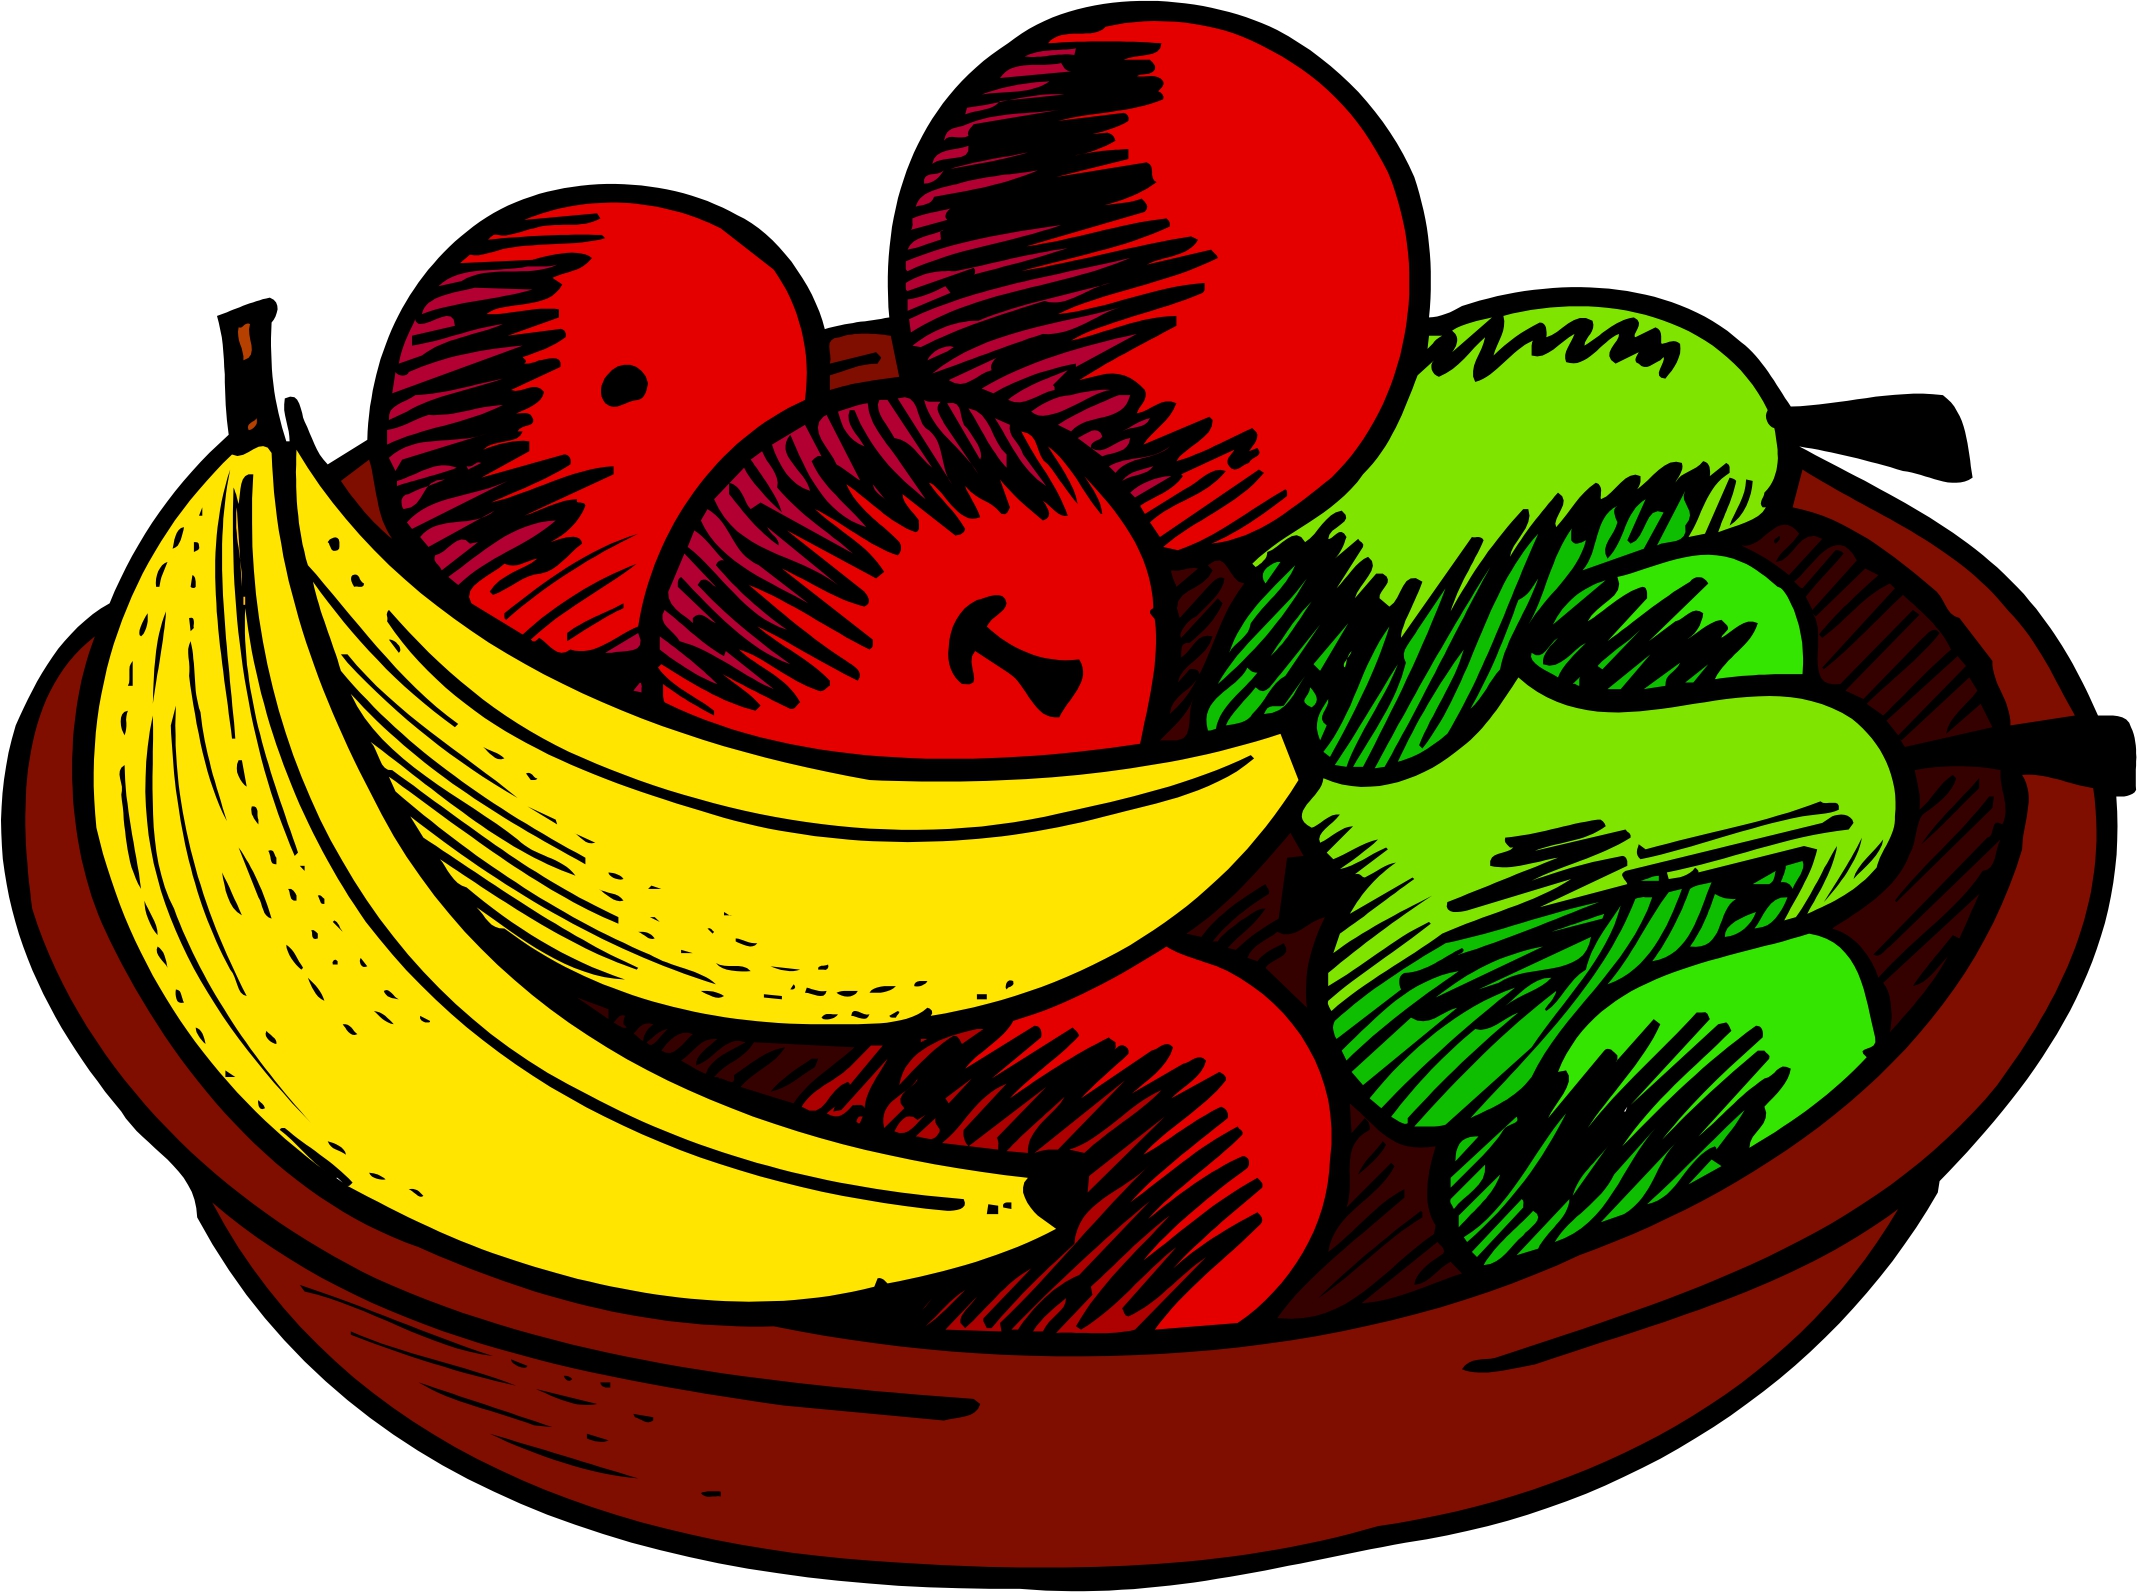 Fruit Bowl Clip Art Images . - Fruit Bowl Clipart